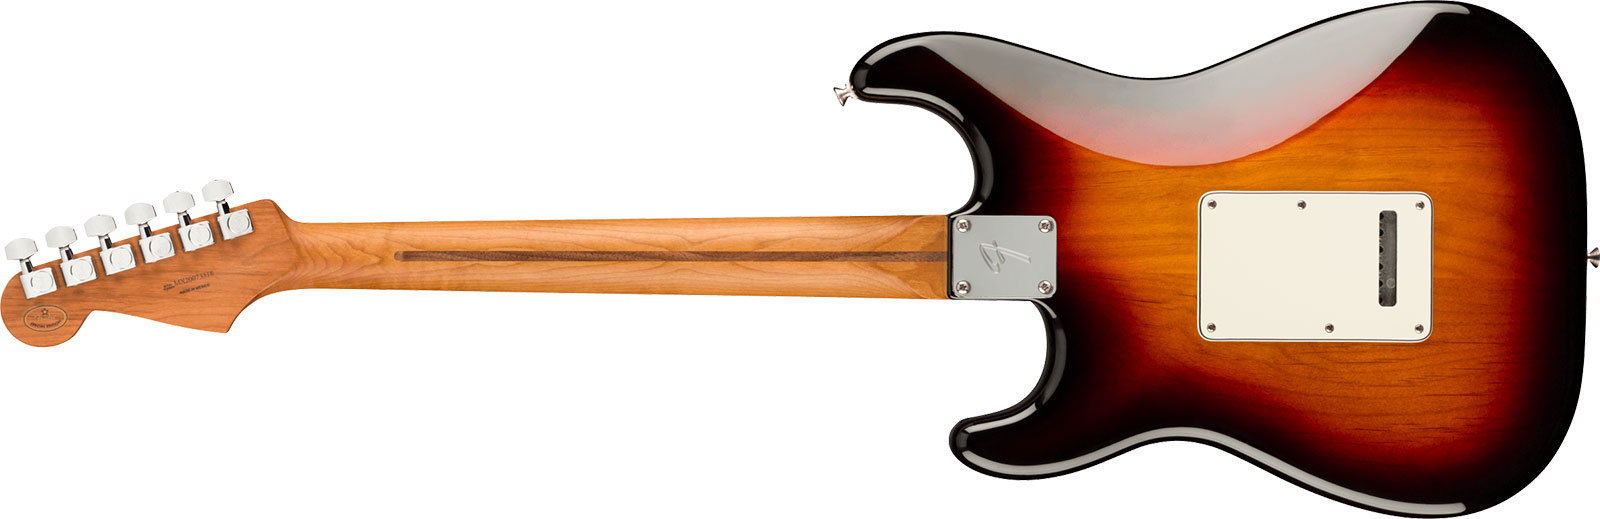 Fender Strat Player Roasted Maple Neck Ltd Mex 3s Trem Mn - 3 Color Sunburst - Str shape electric guitar - Variation 1